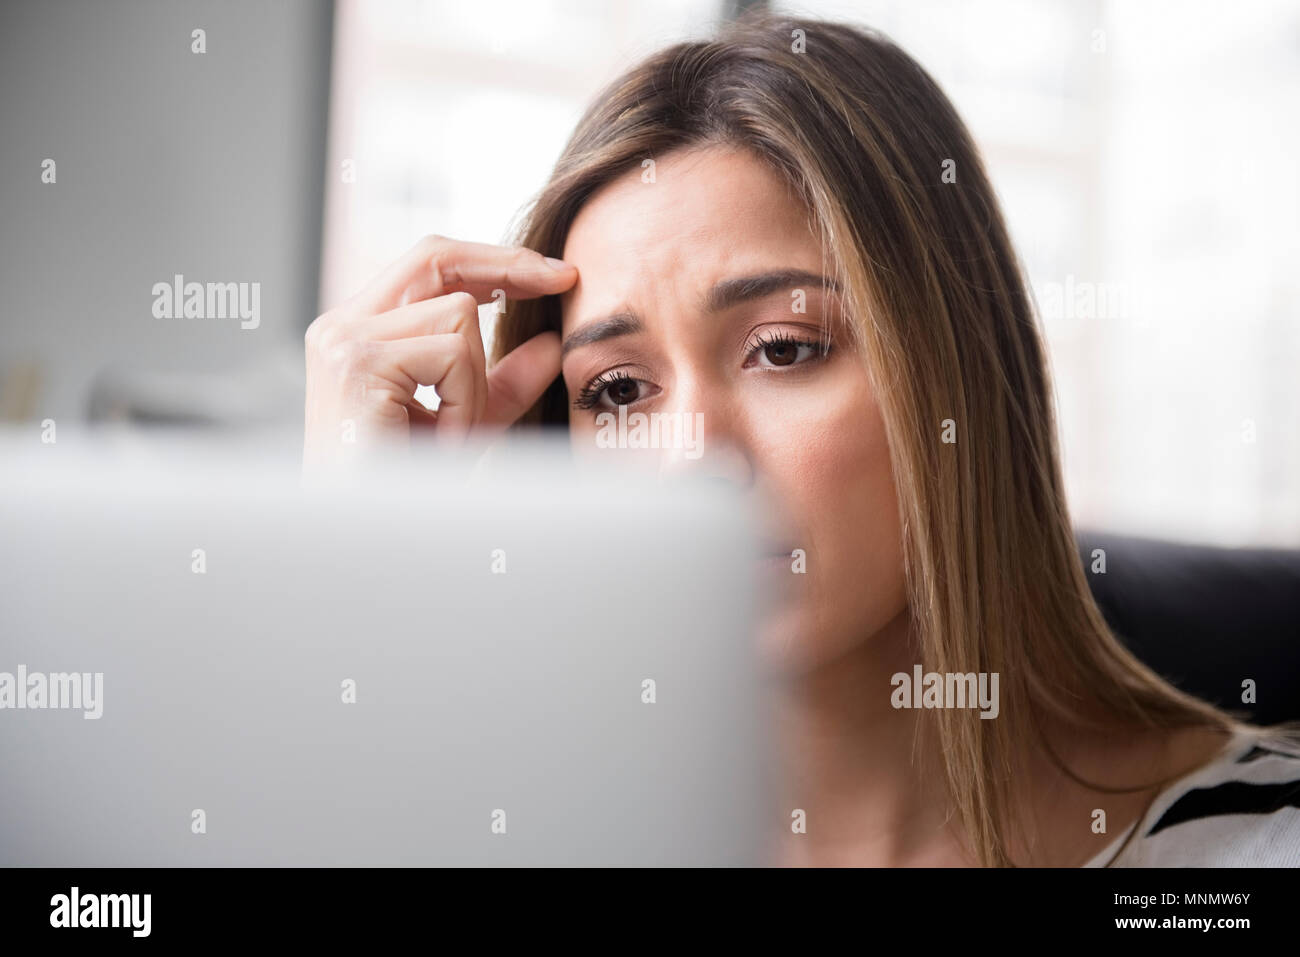 Inquiet jeune femme en face de l'ordinateur portable Banque D'Images